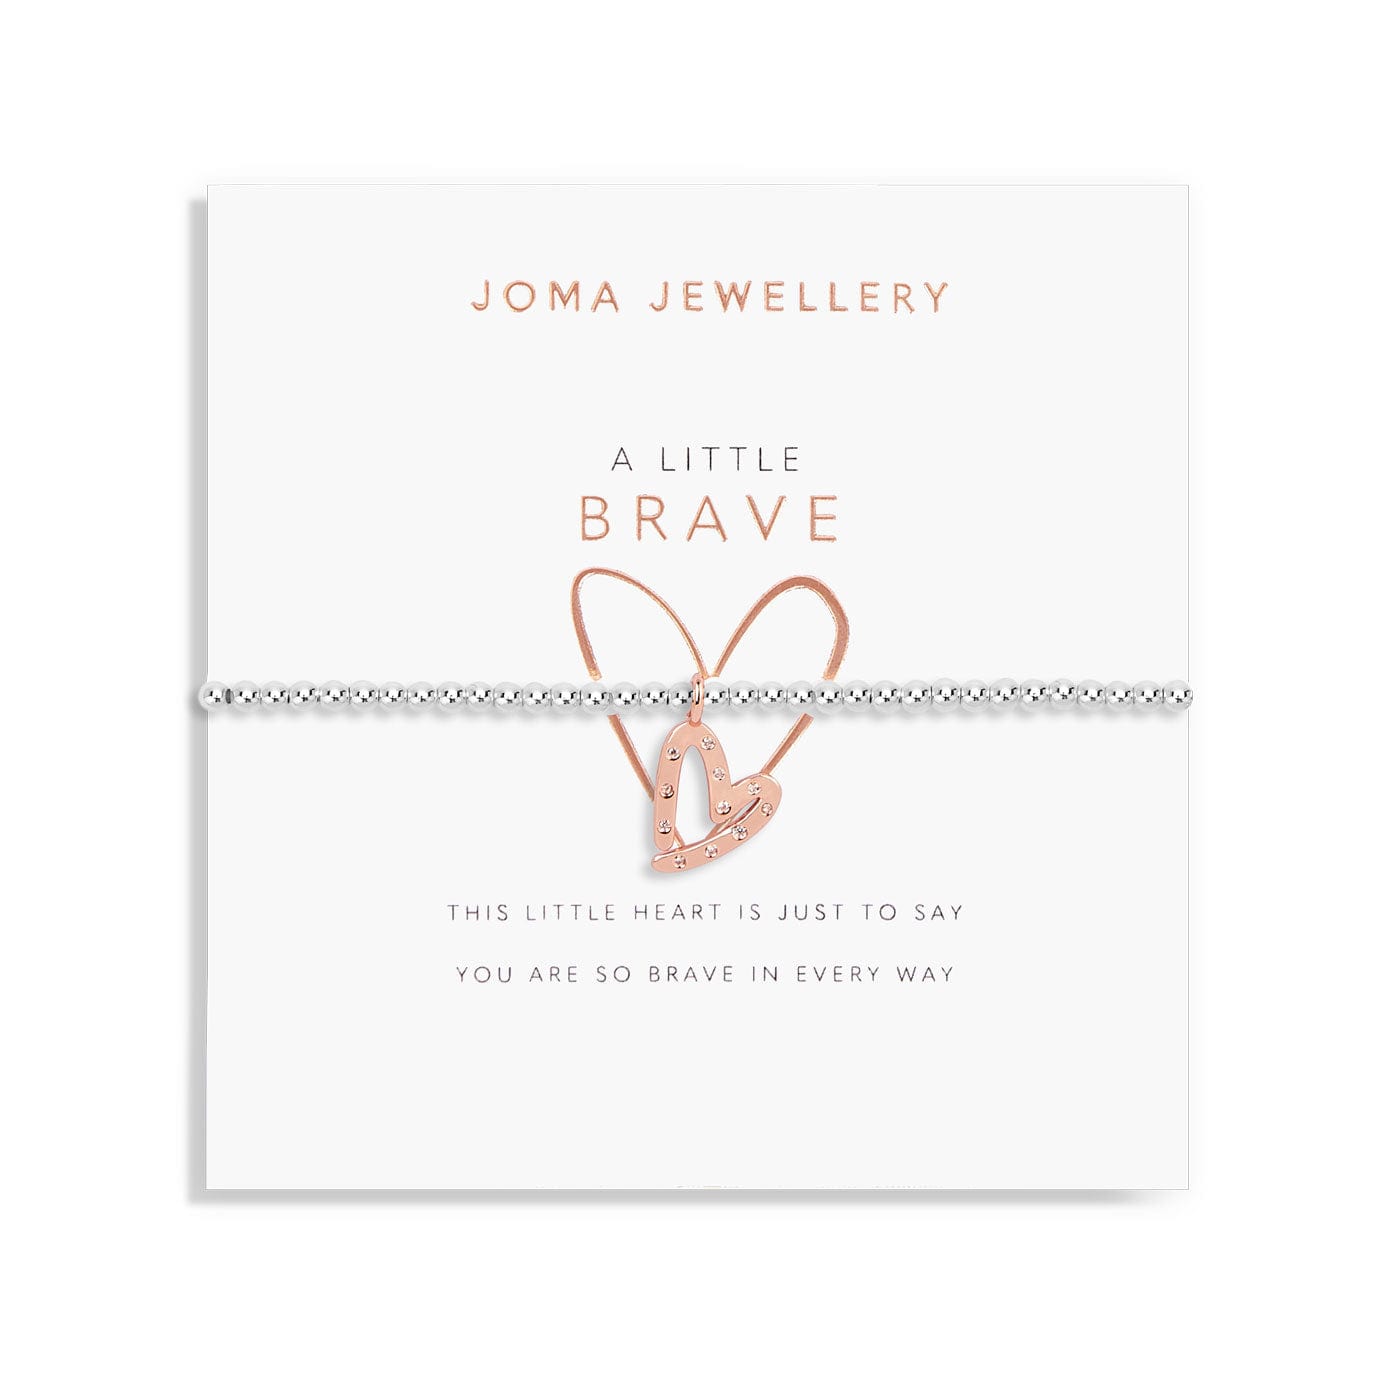 Joma Jewellery Childrens Bracelet Joma Jewellery Childrens Bracelet - A Little Brave